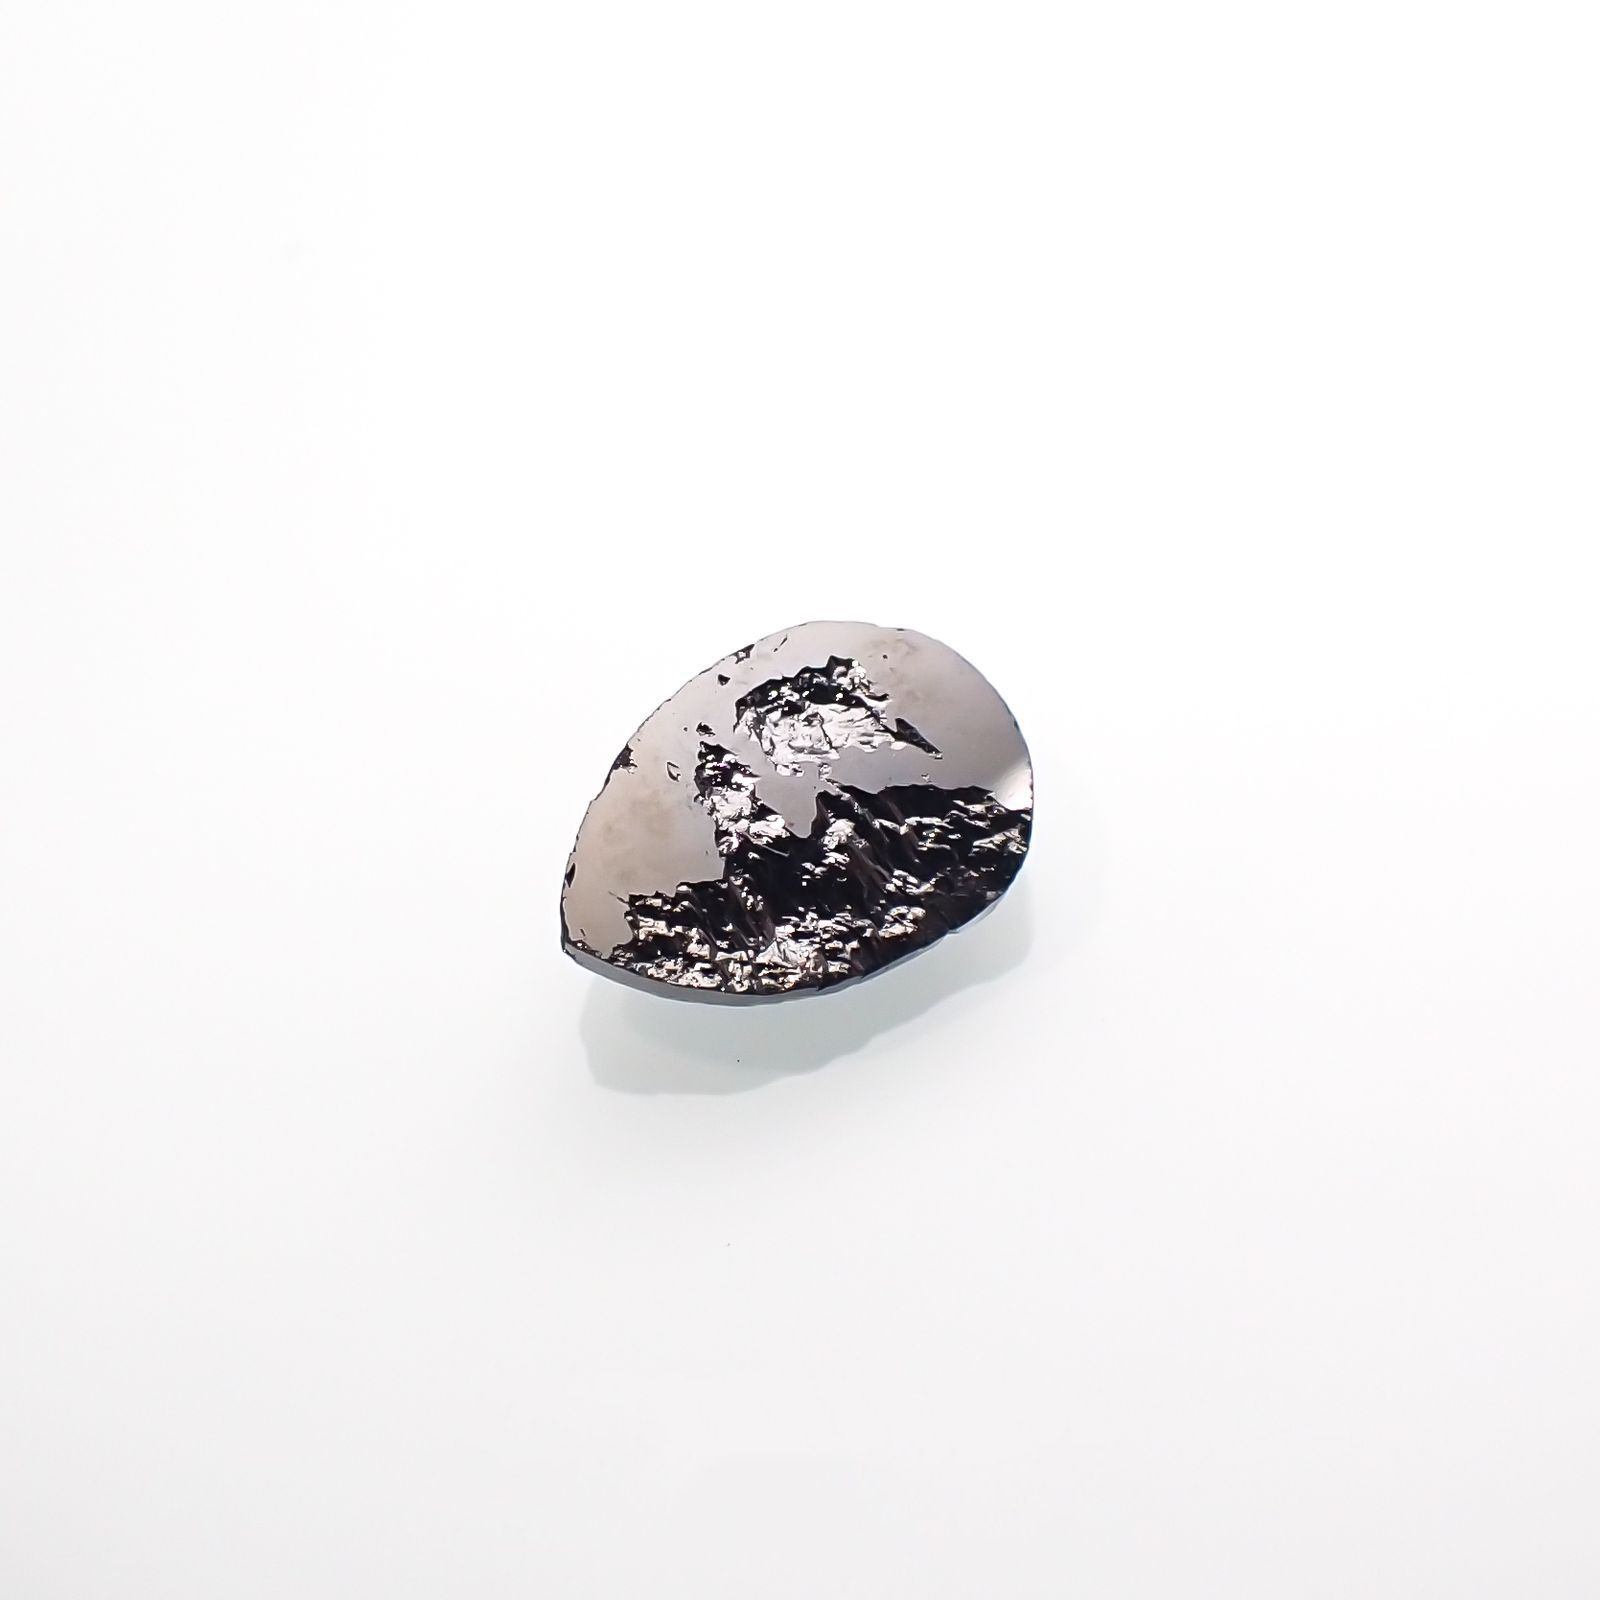 ブラックダイヤモンド(宝石名ダイアモンド) ジンバブエ産 0.64ct 識別 